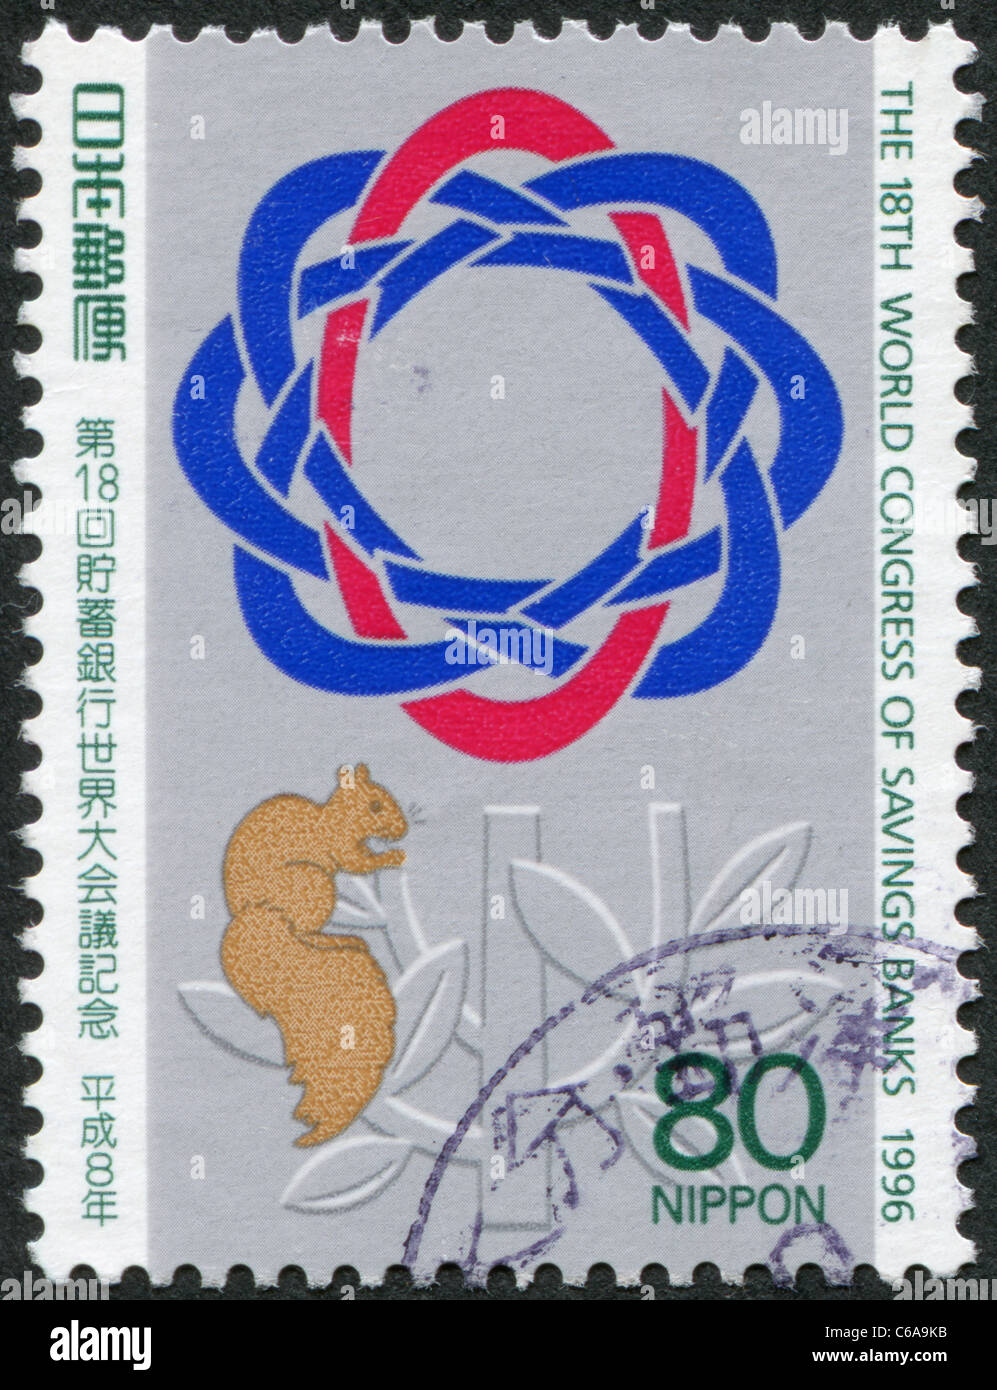 Japon - 1996 : timbre imprimé au Japon, montre l'emblème du Congrès d'Épargne, et l'écureuil. Banque D'Images